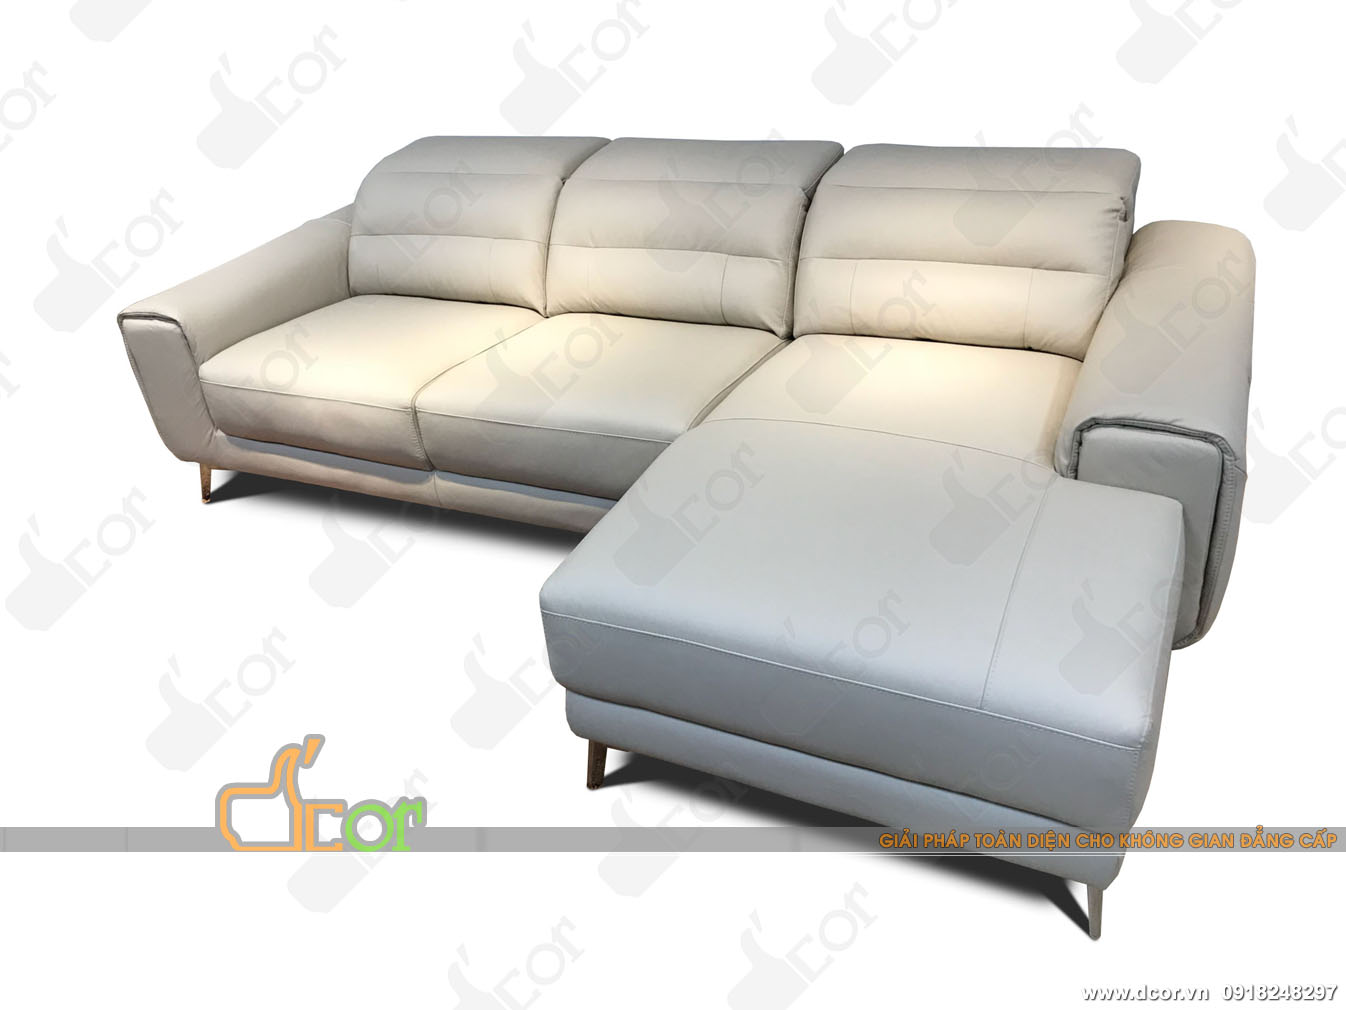 Không thể rời mắt với mẫu ghế sofa đẹp lịch lãm nhập khẩu chính hãng Malaysia